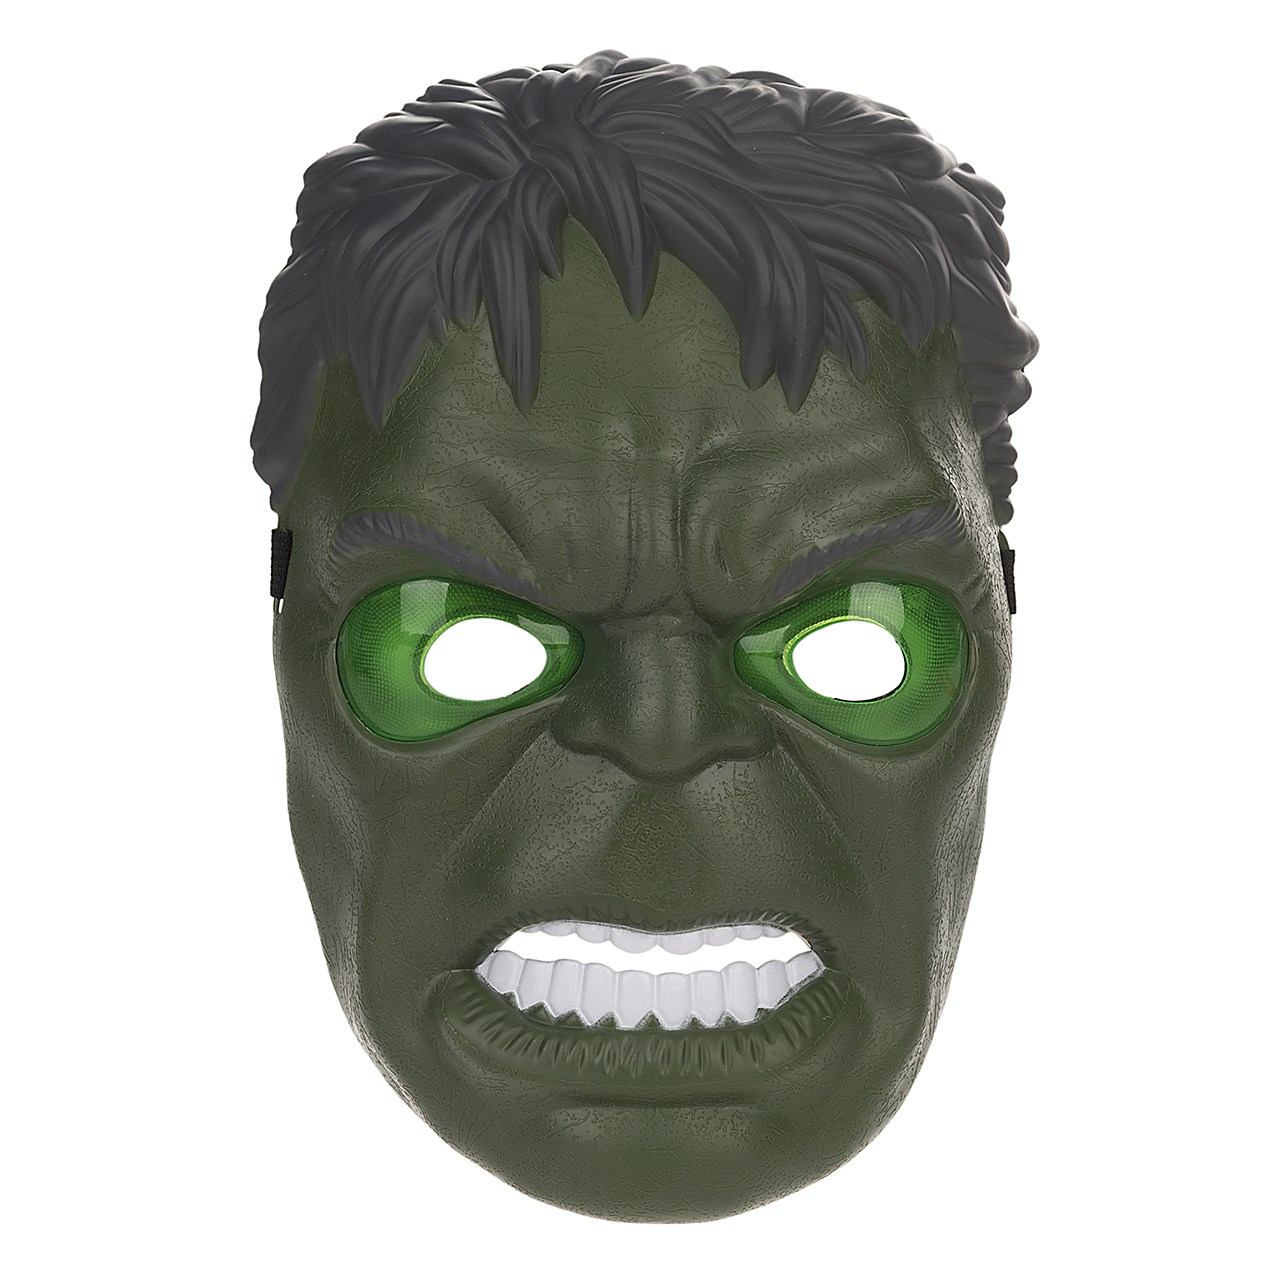 ماسک چراغ دار مدل Hulk